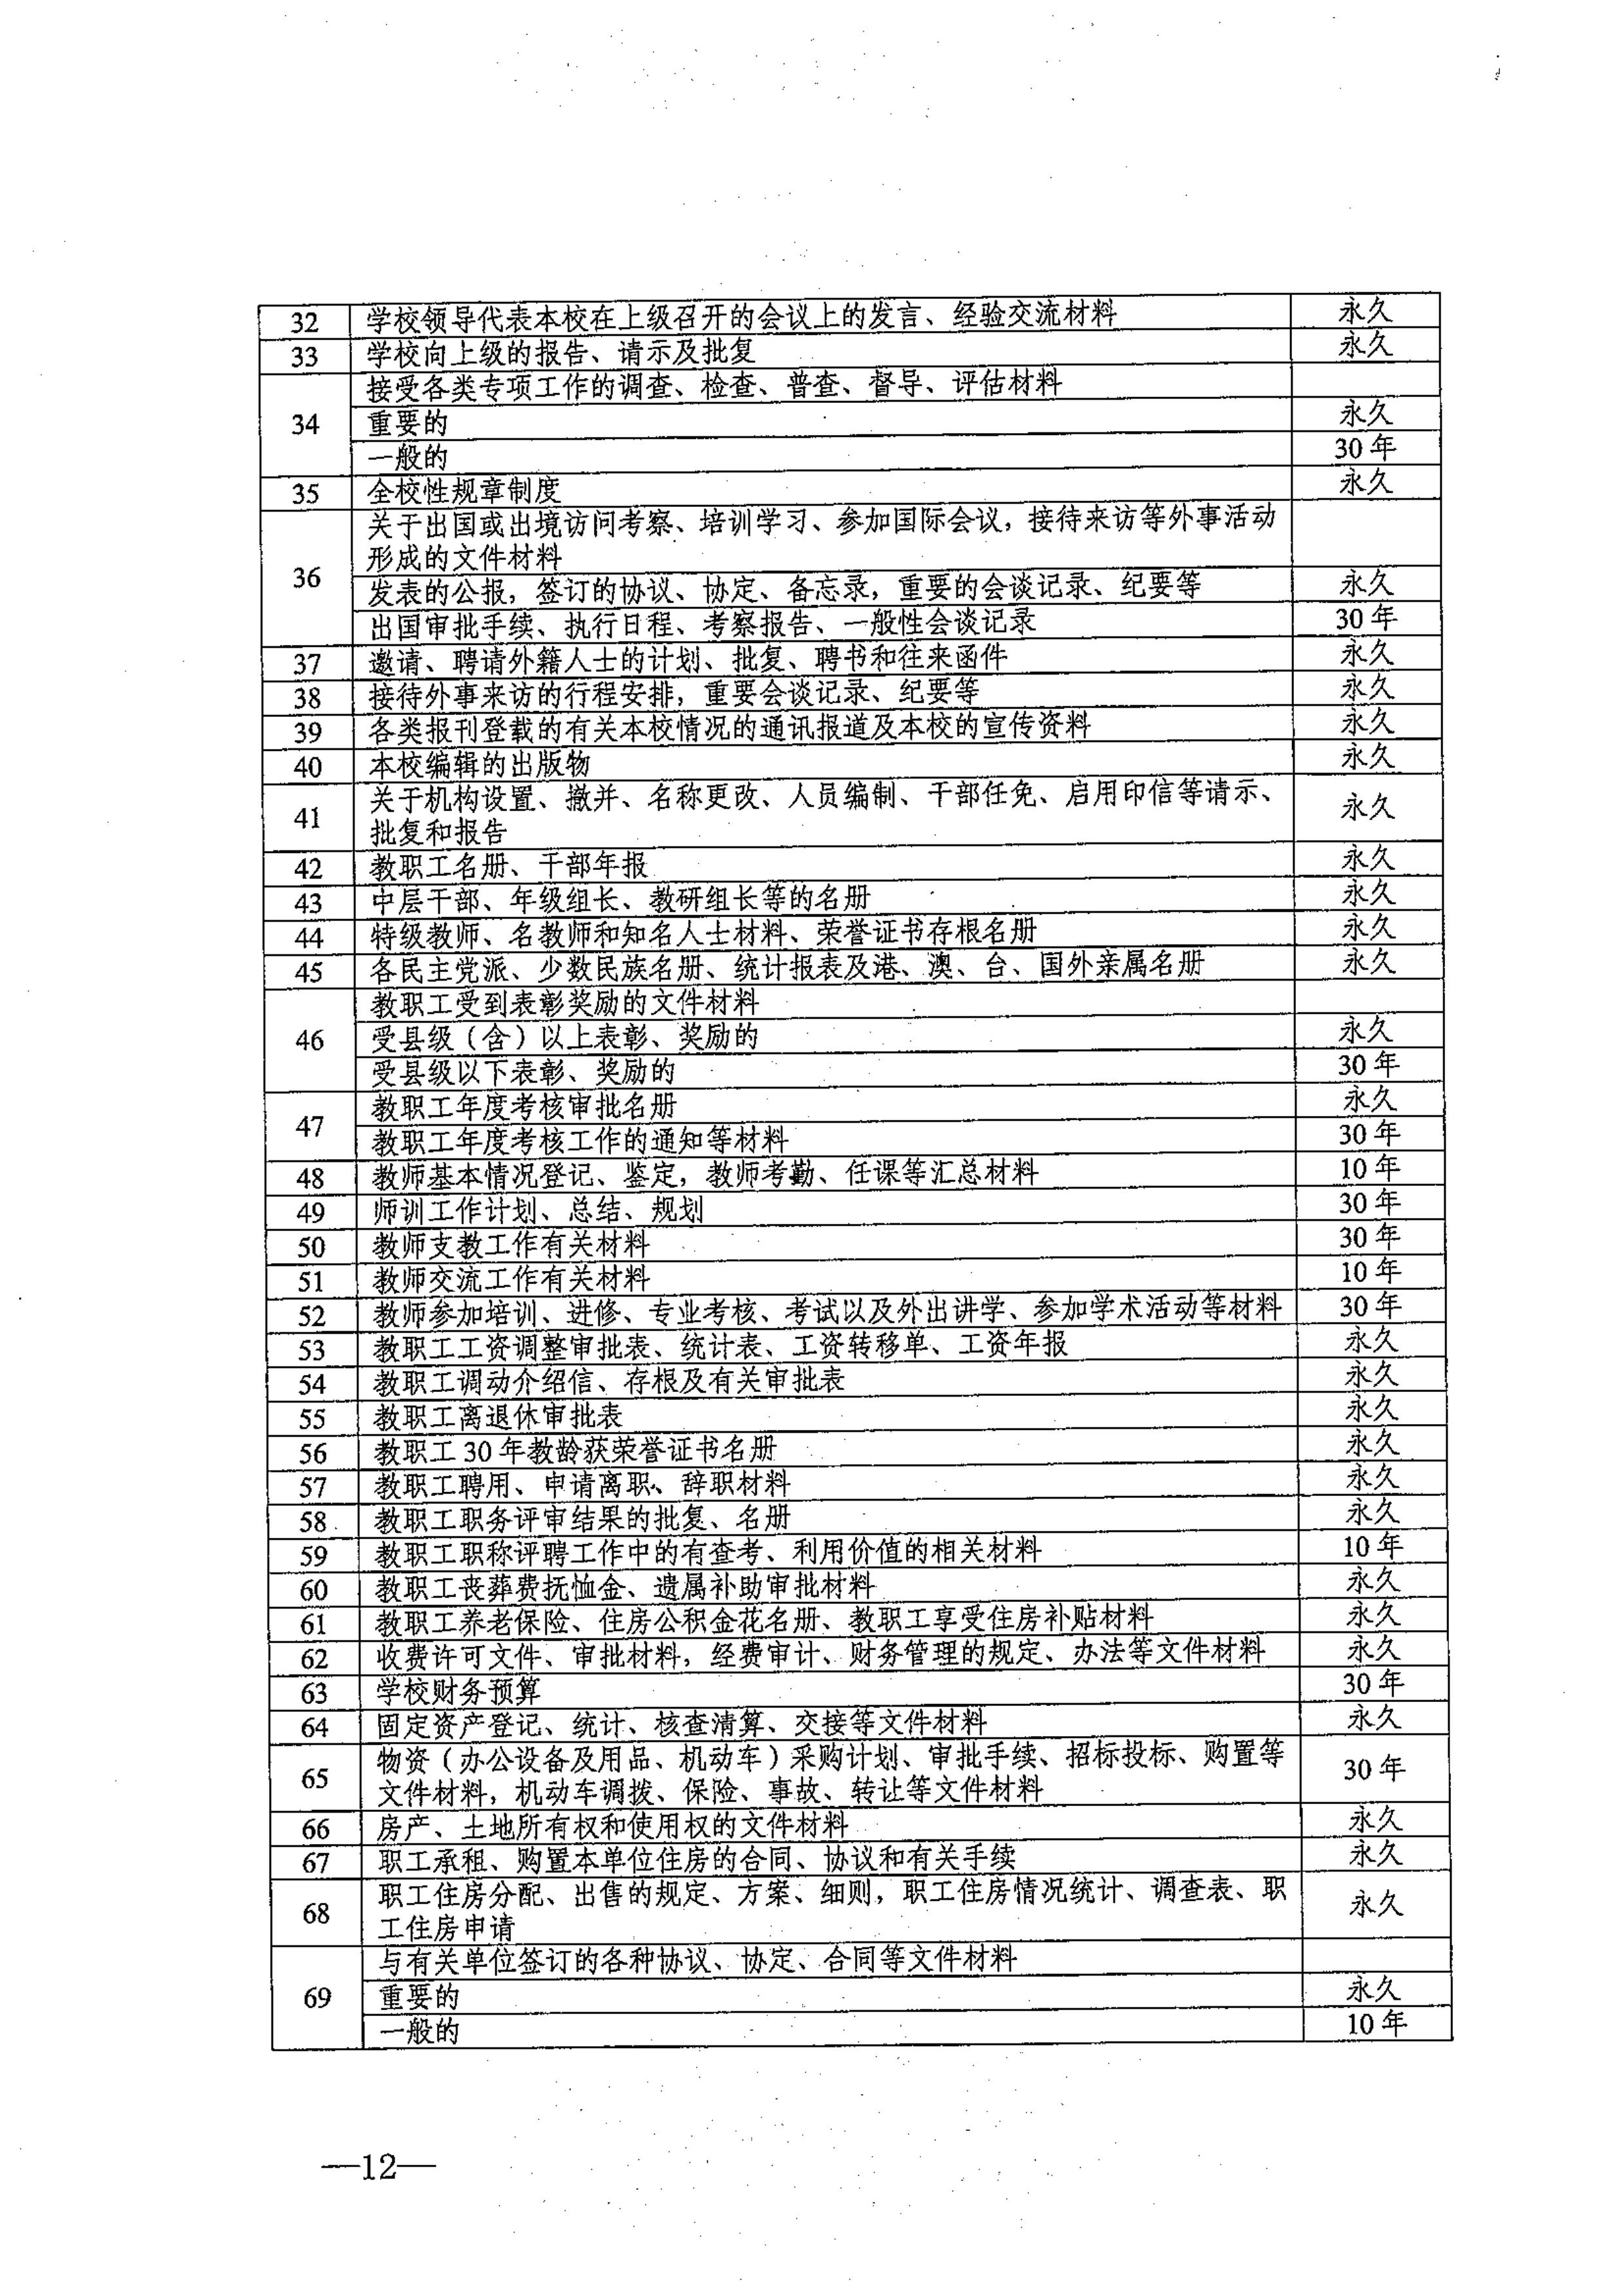 省教育厅、省档案局关于印发《江苏省中小学校档案管理暂行办法》的通知-图片-0012